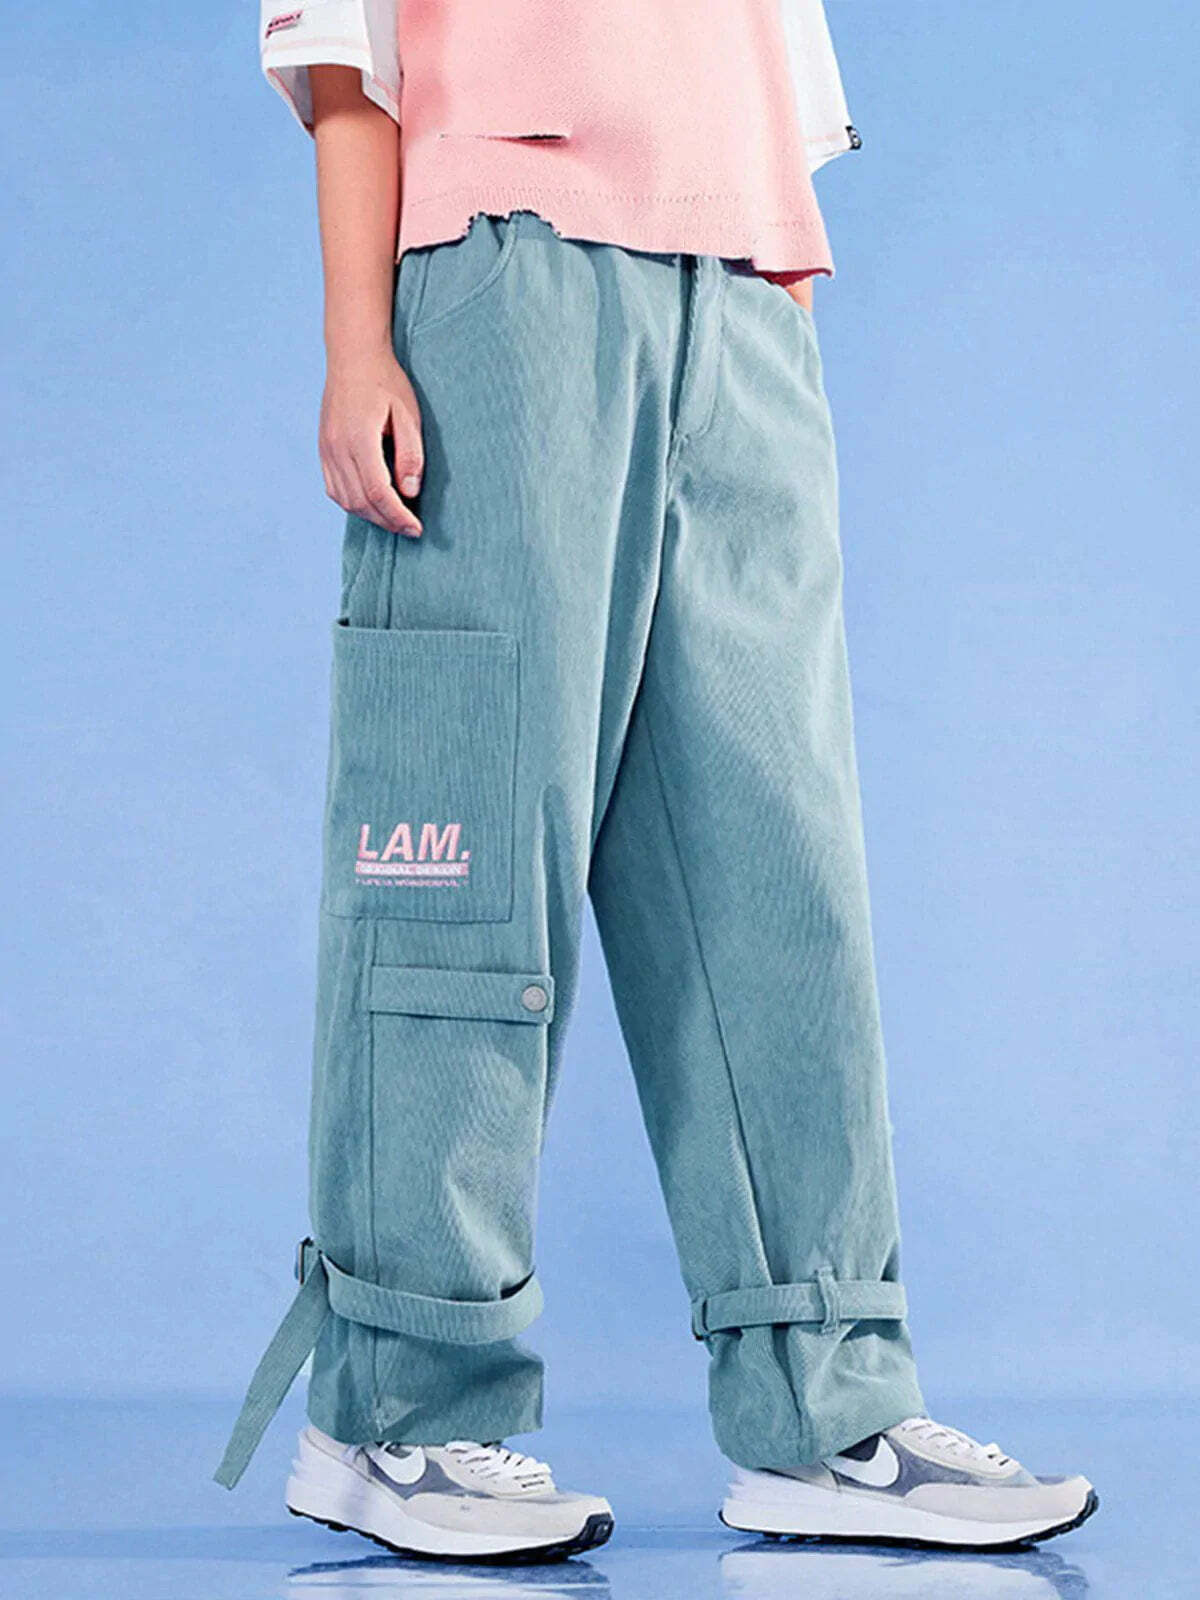 dimensional print leg straps pants edgy & vibrant streetwear 6724